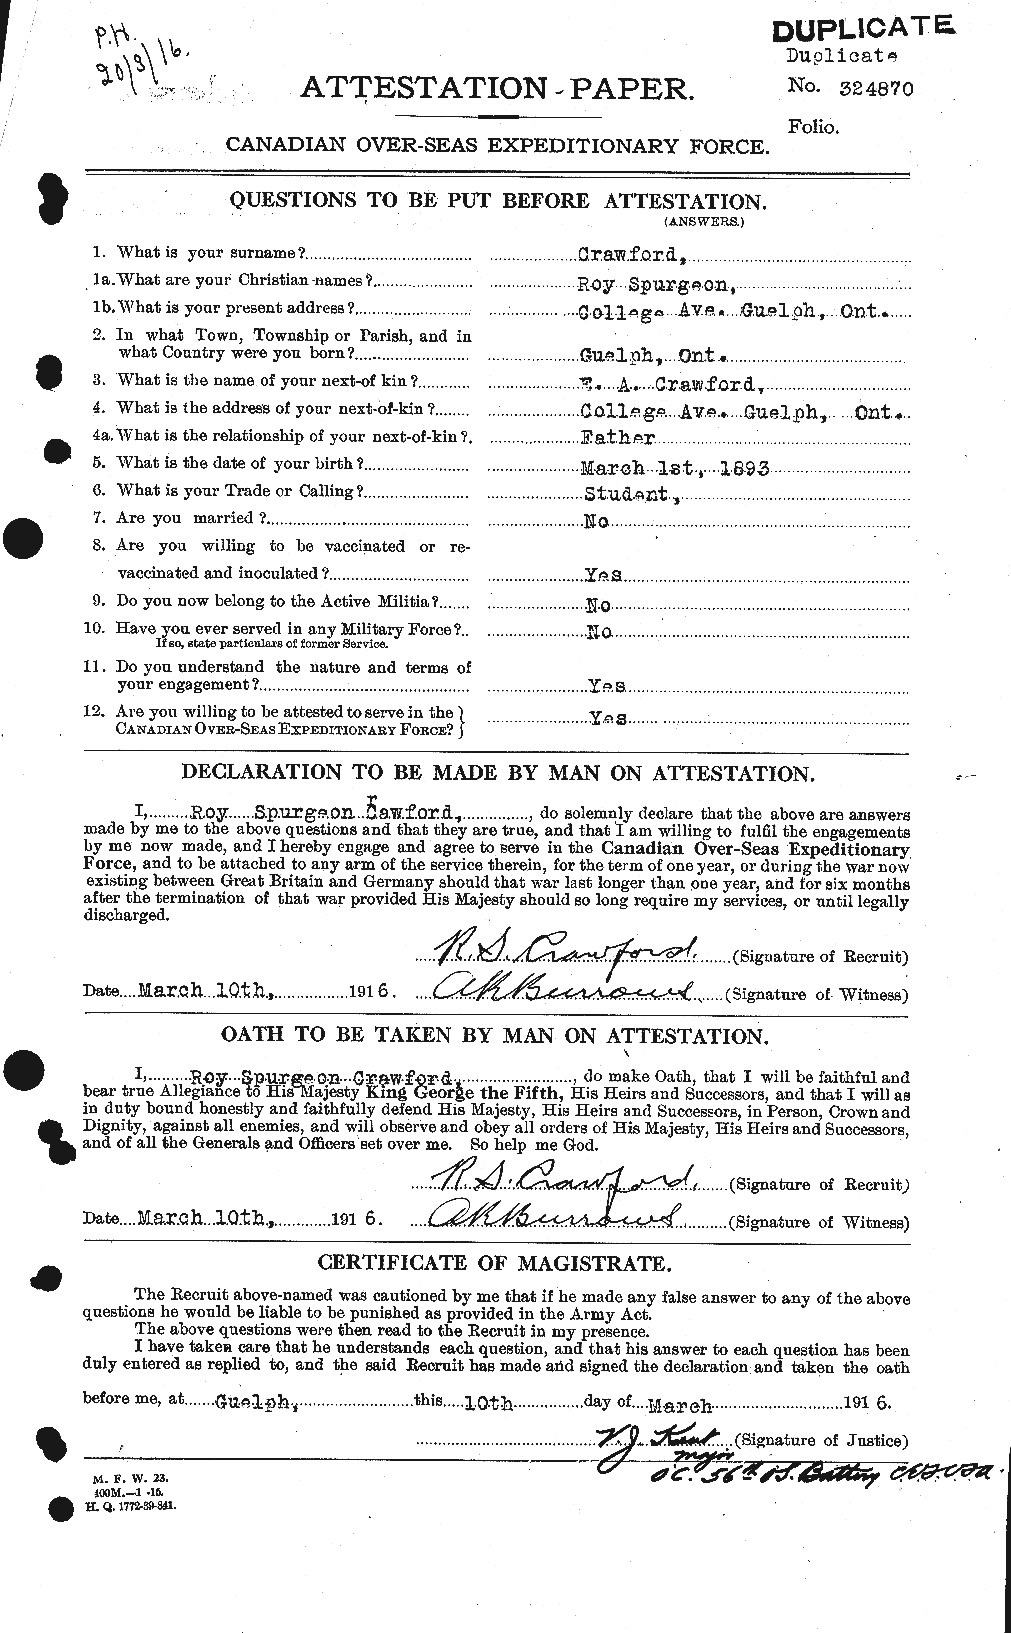 Dossiers du Personnel de la Première Guerre mondiale - CEC 061385a